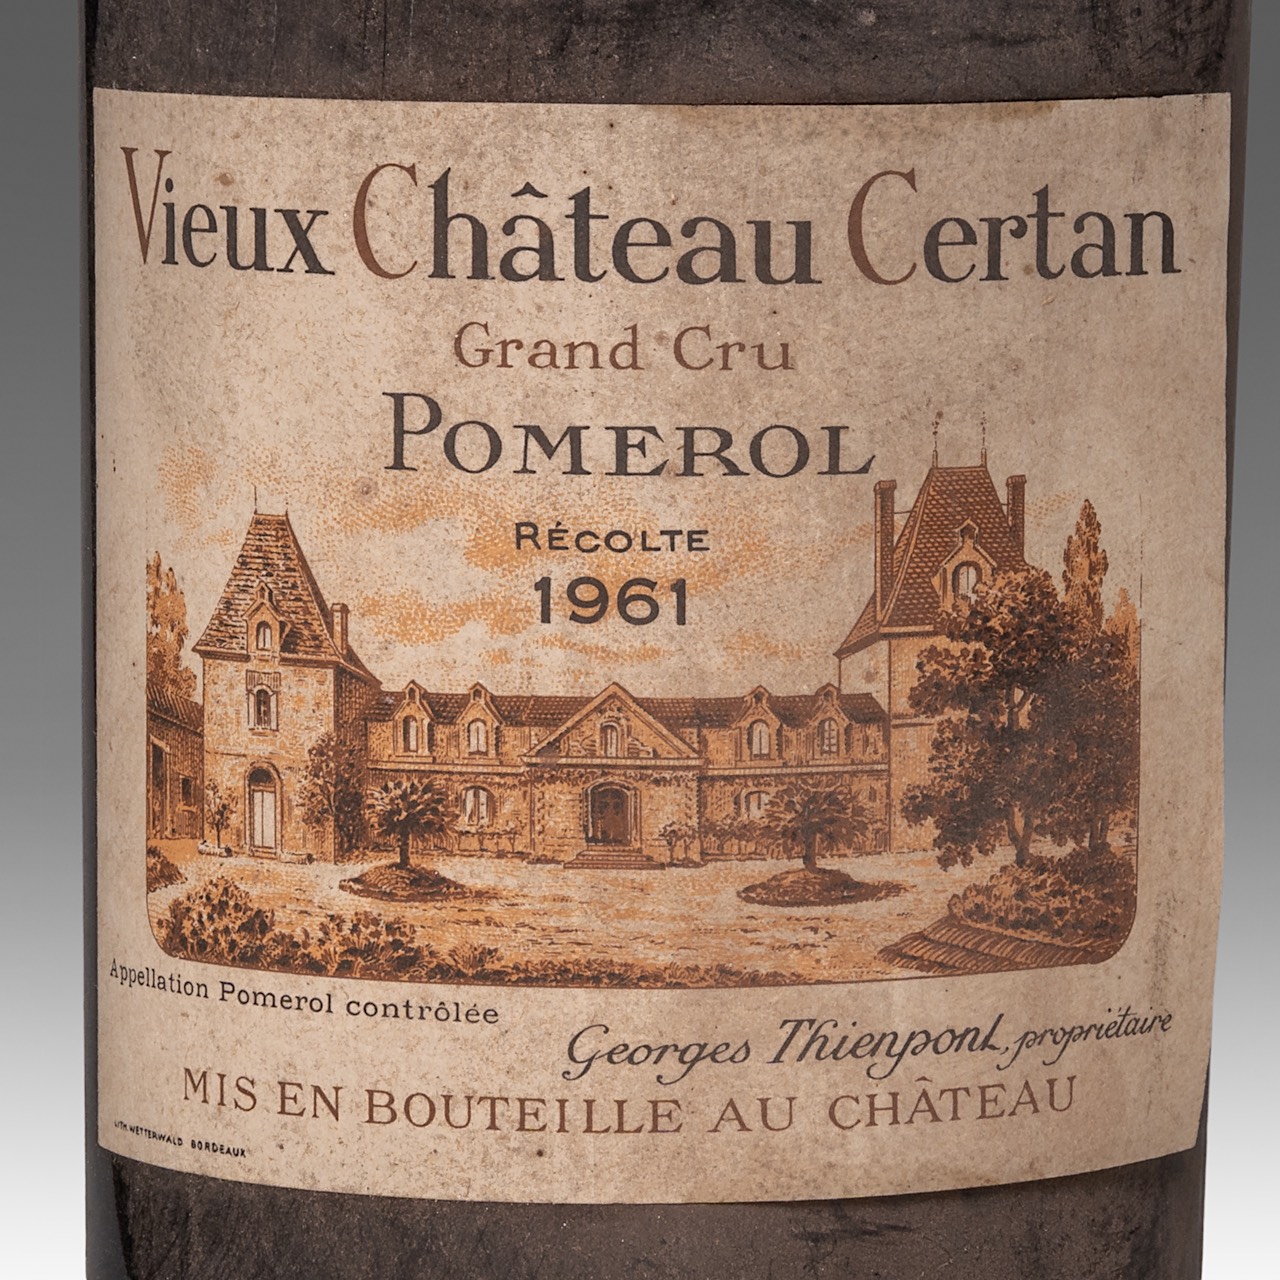 A magnum bottle Vieux Chateau Certan, Grand Cru, Pomerol, 1961, 150 CL - Image 2 of 4